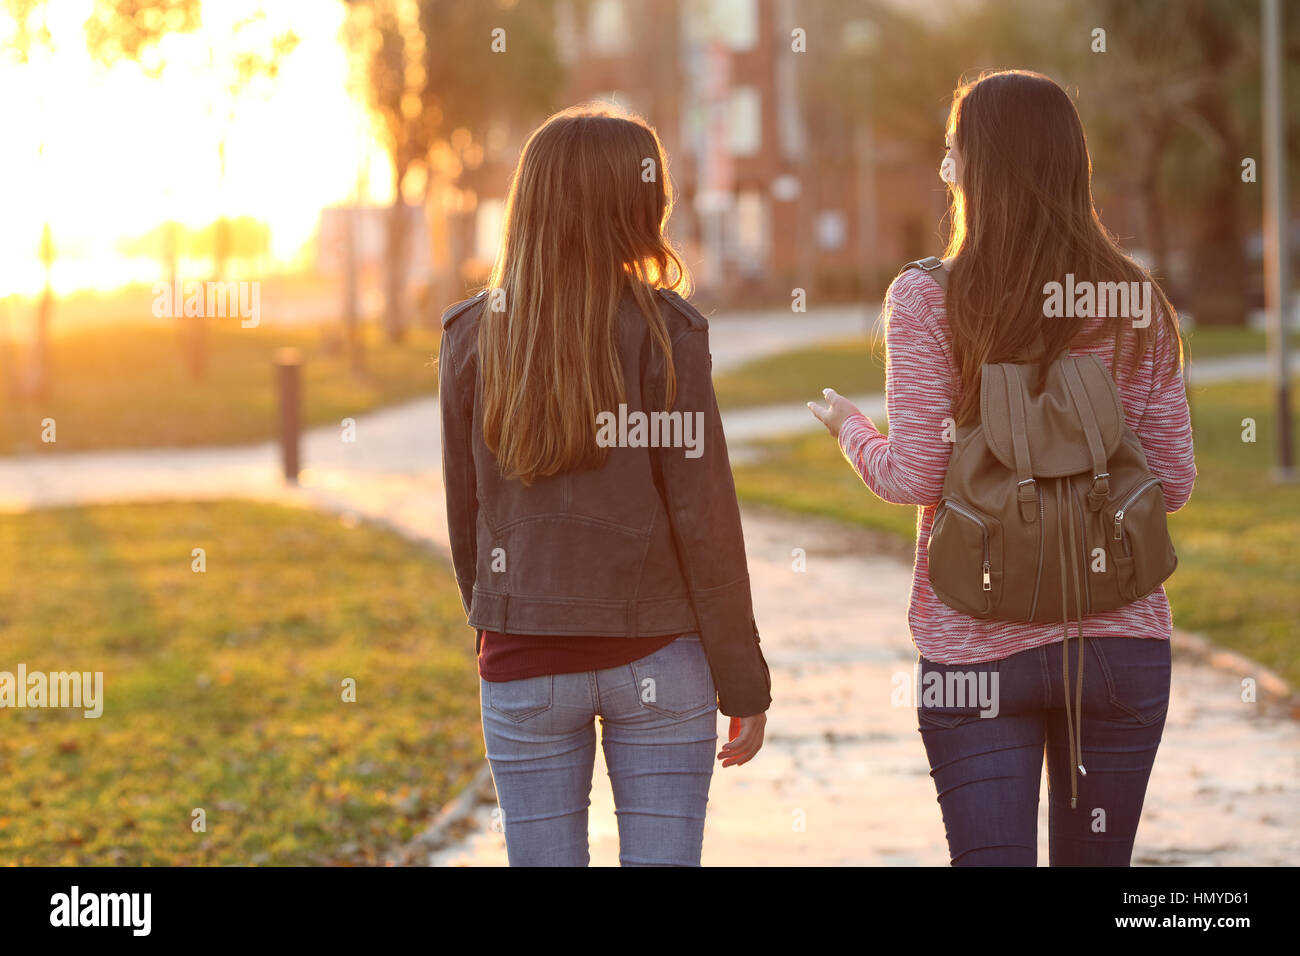 Vista posteriore dei due amici camminare insieme in un parco all'alba con una calda luce in background Foto Stock